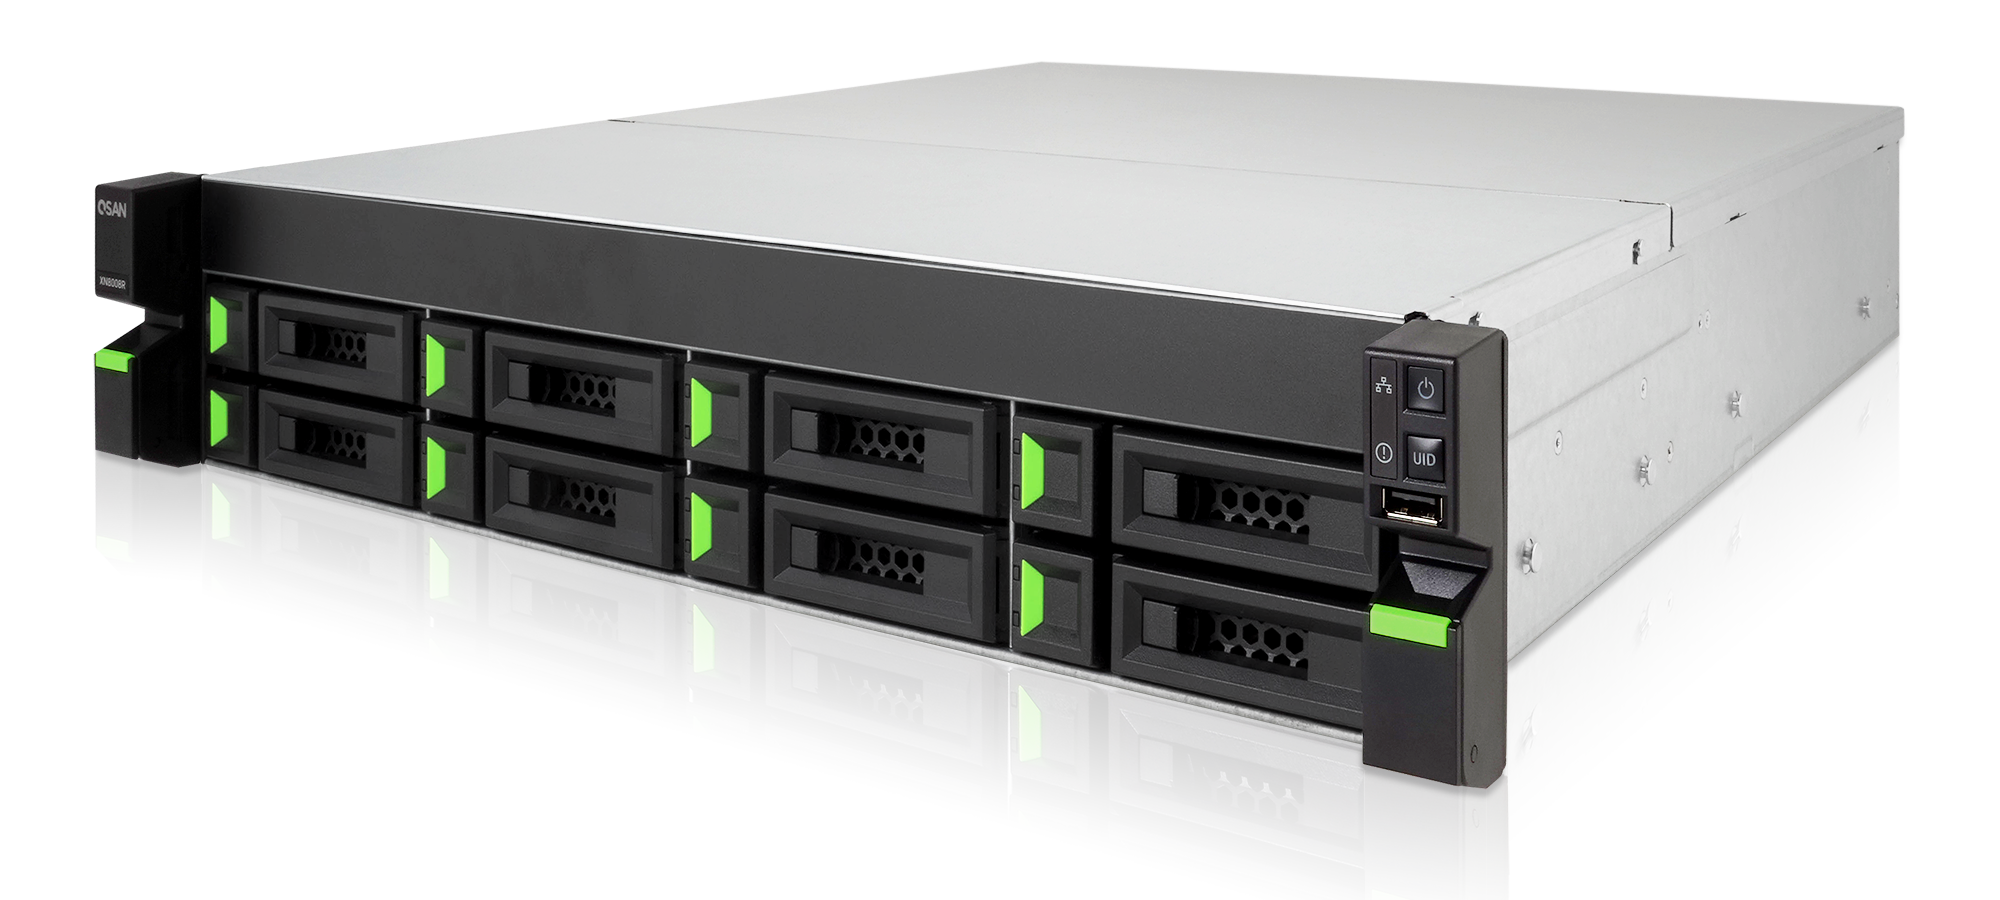 XN5008R от QSAN: система хранения данных с выгодой